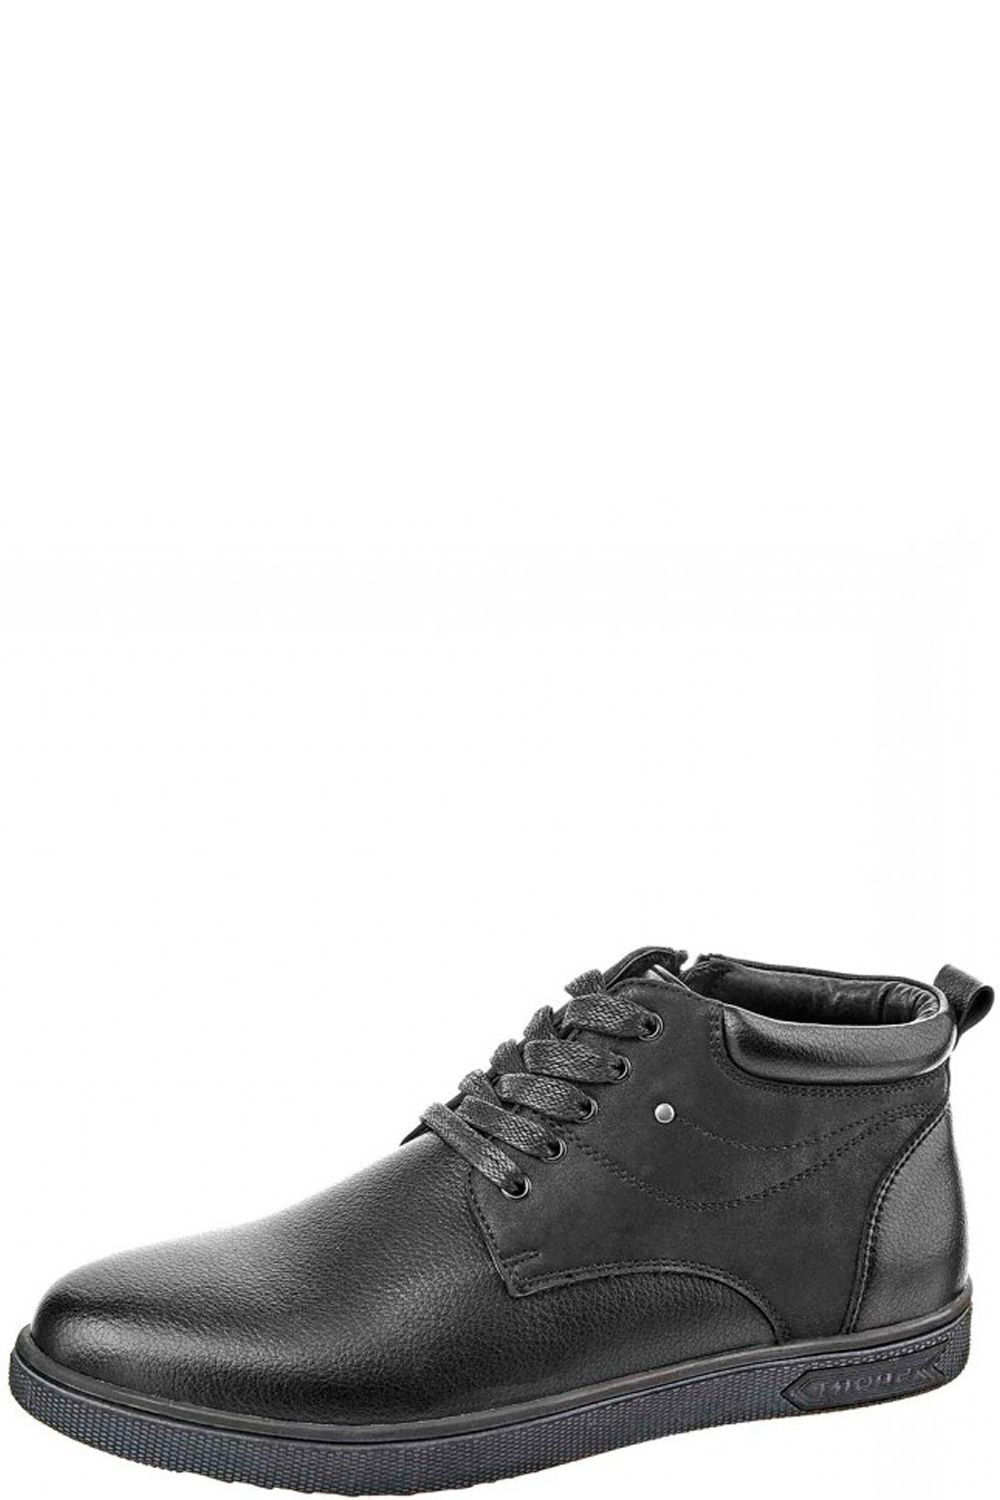 Ботинки Keddo, размер 36, цвет черный 168657/02-01 - фото 1